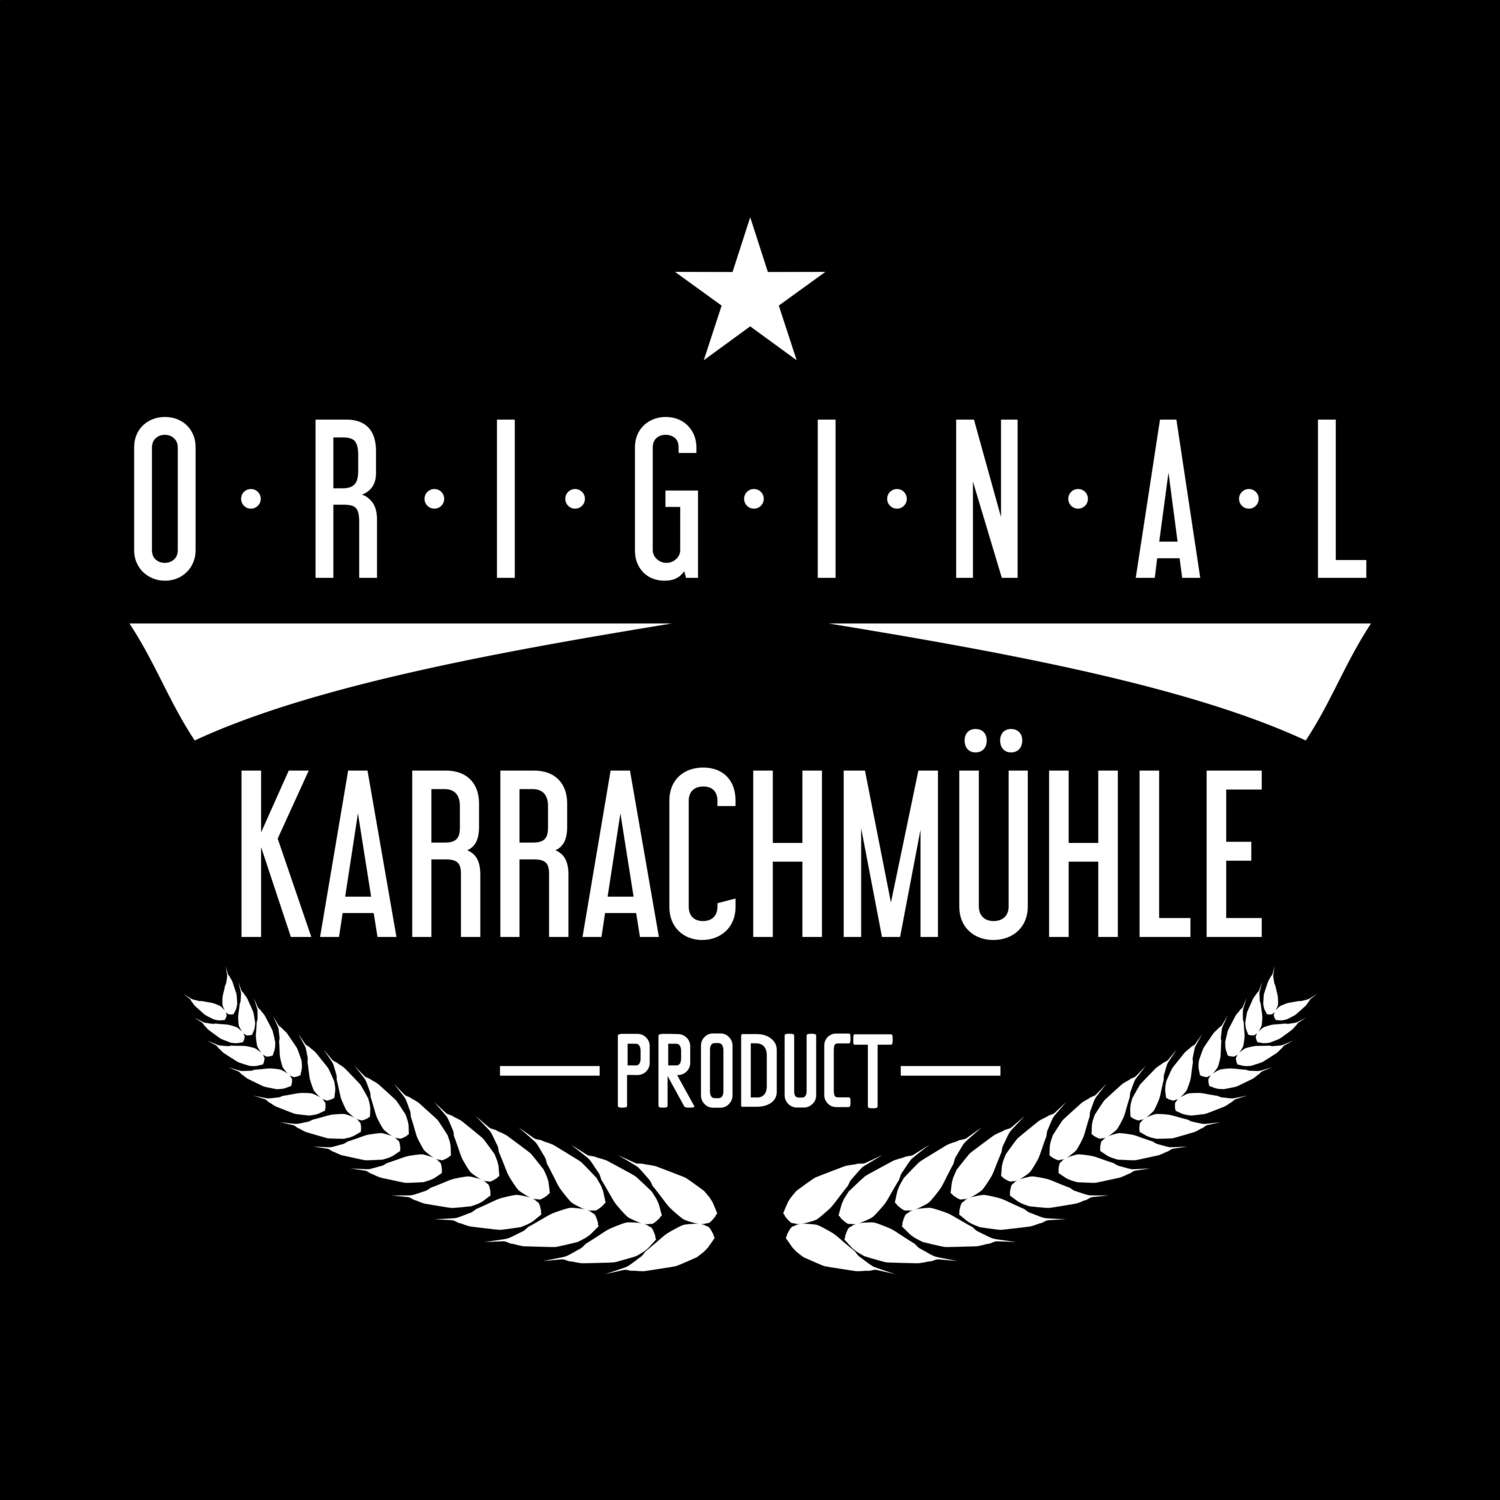 Karrachmühle T-Shirt »Original Product«